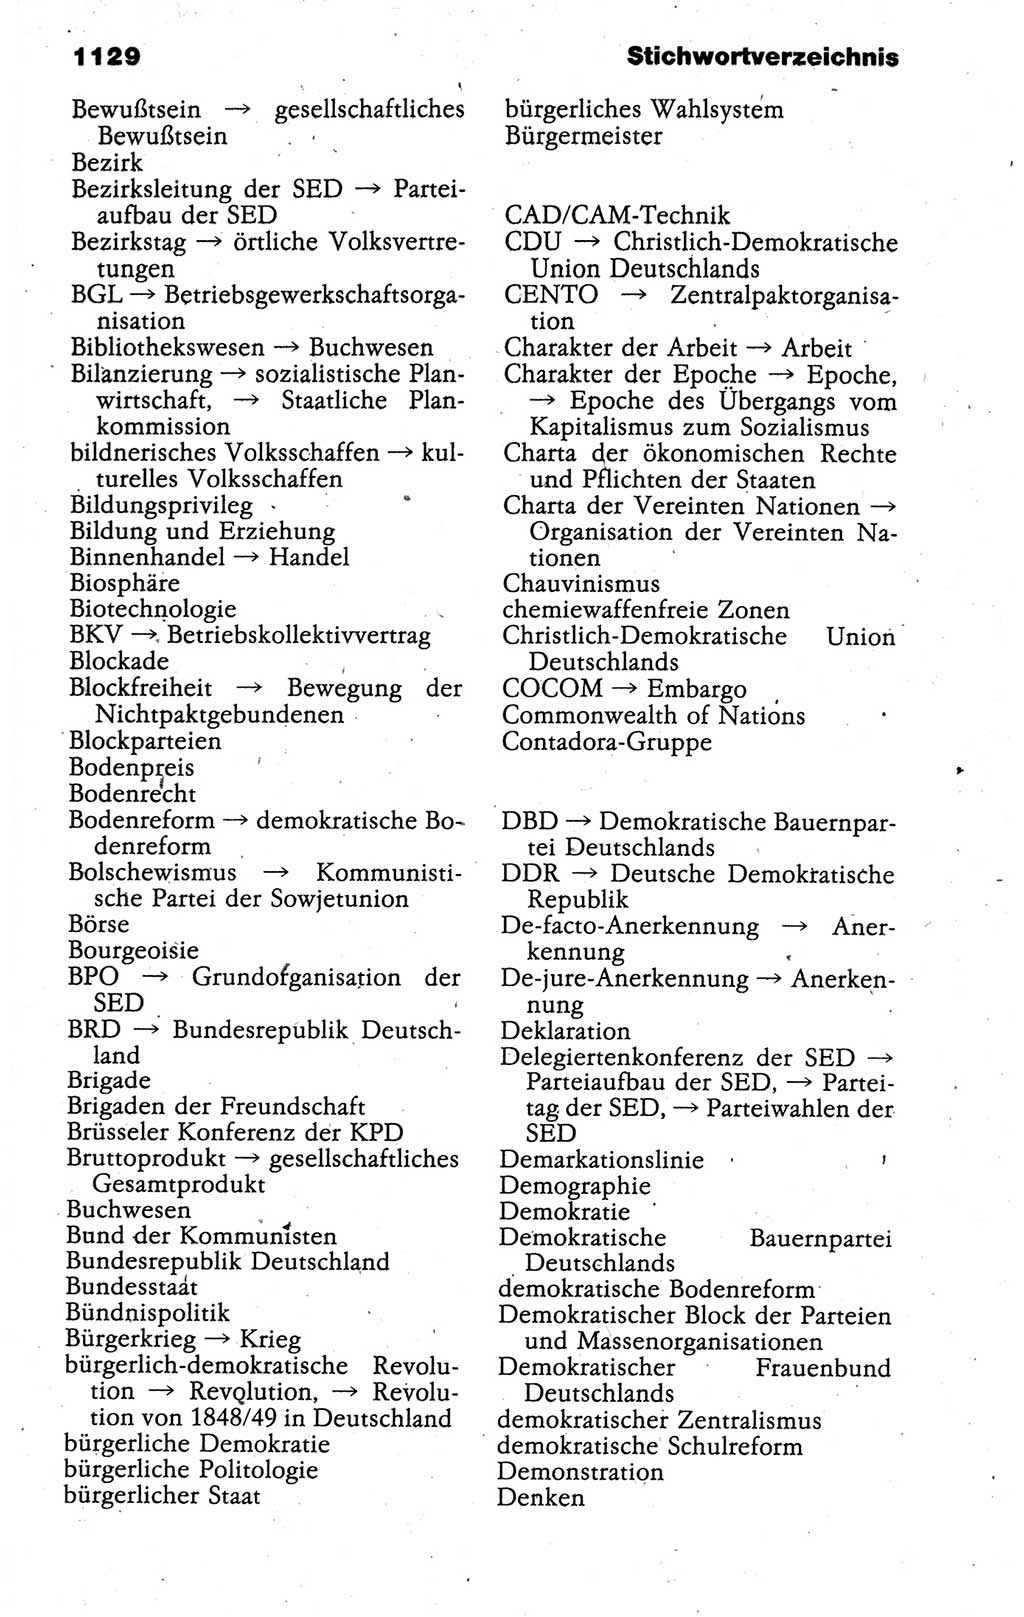 Kleines politisches Wörterbuch [Deutsche Demokratische Republik (DDR)] 1988, Seite 1129 (Kl. pol. Wb. DDR 1988, S. 1129)